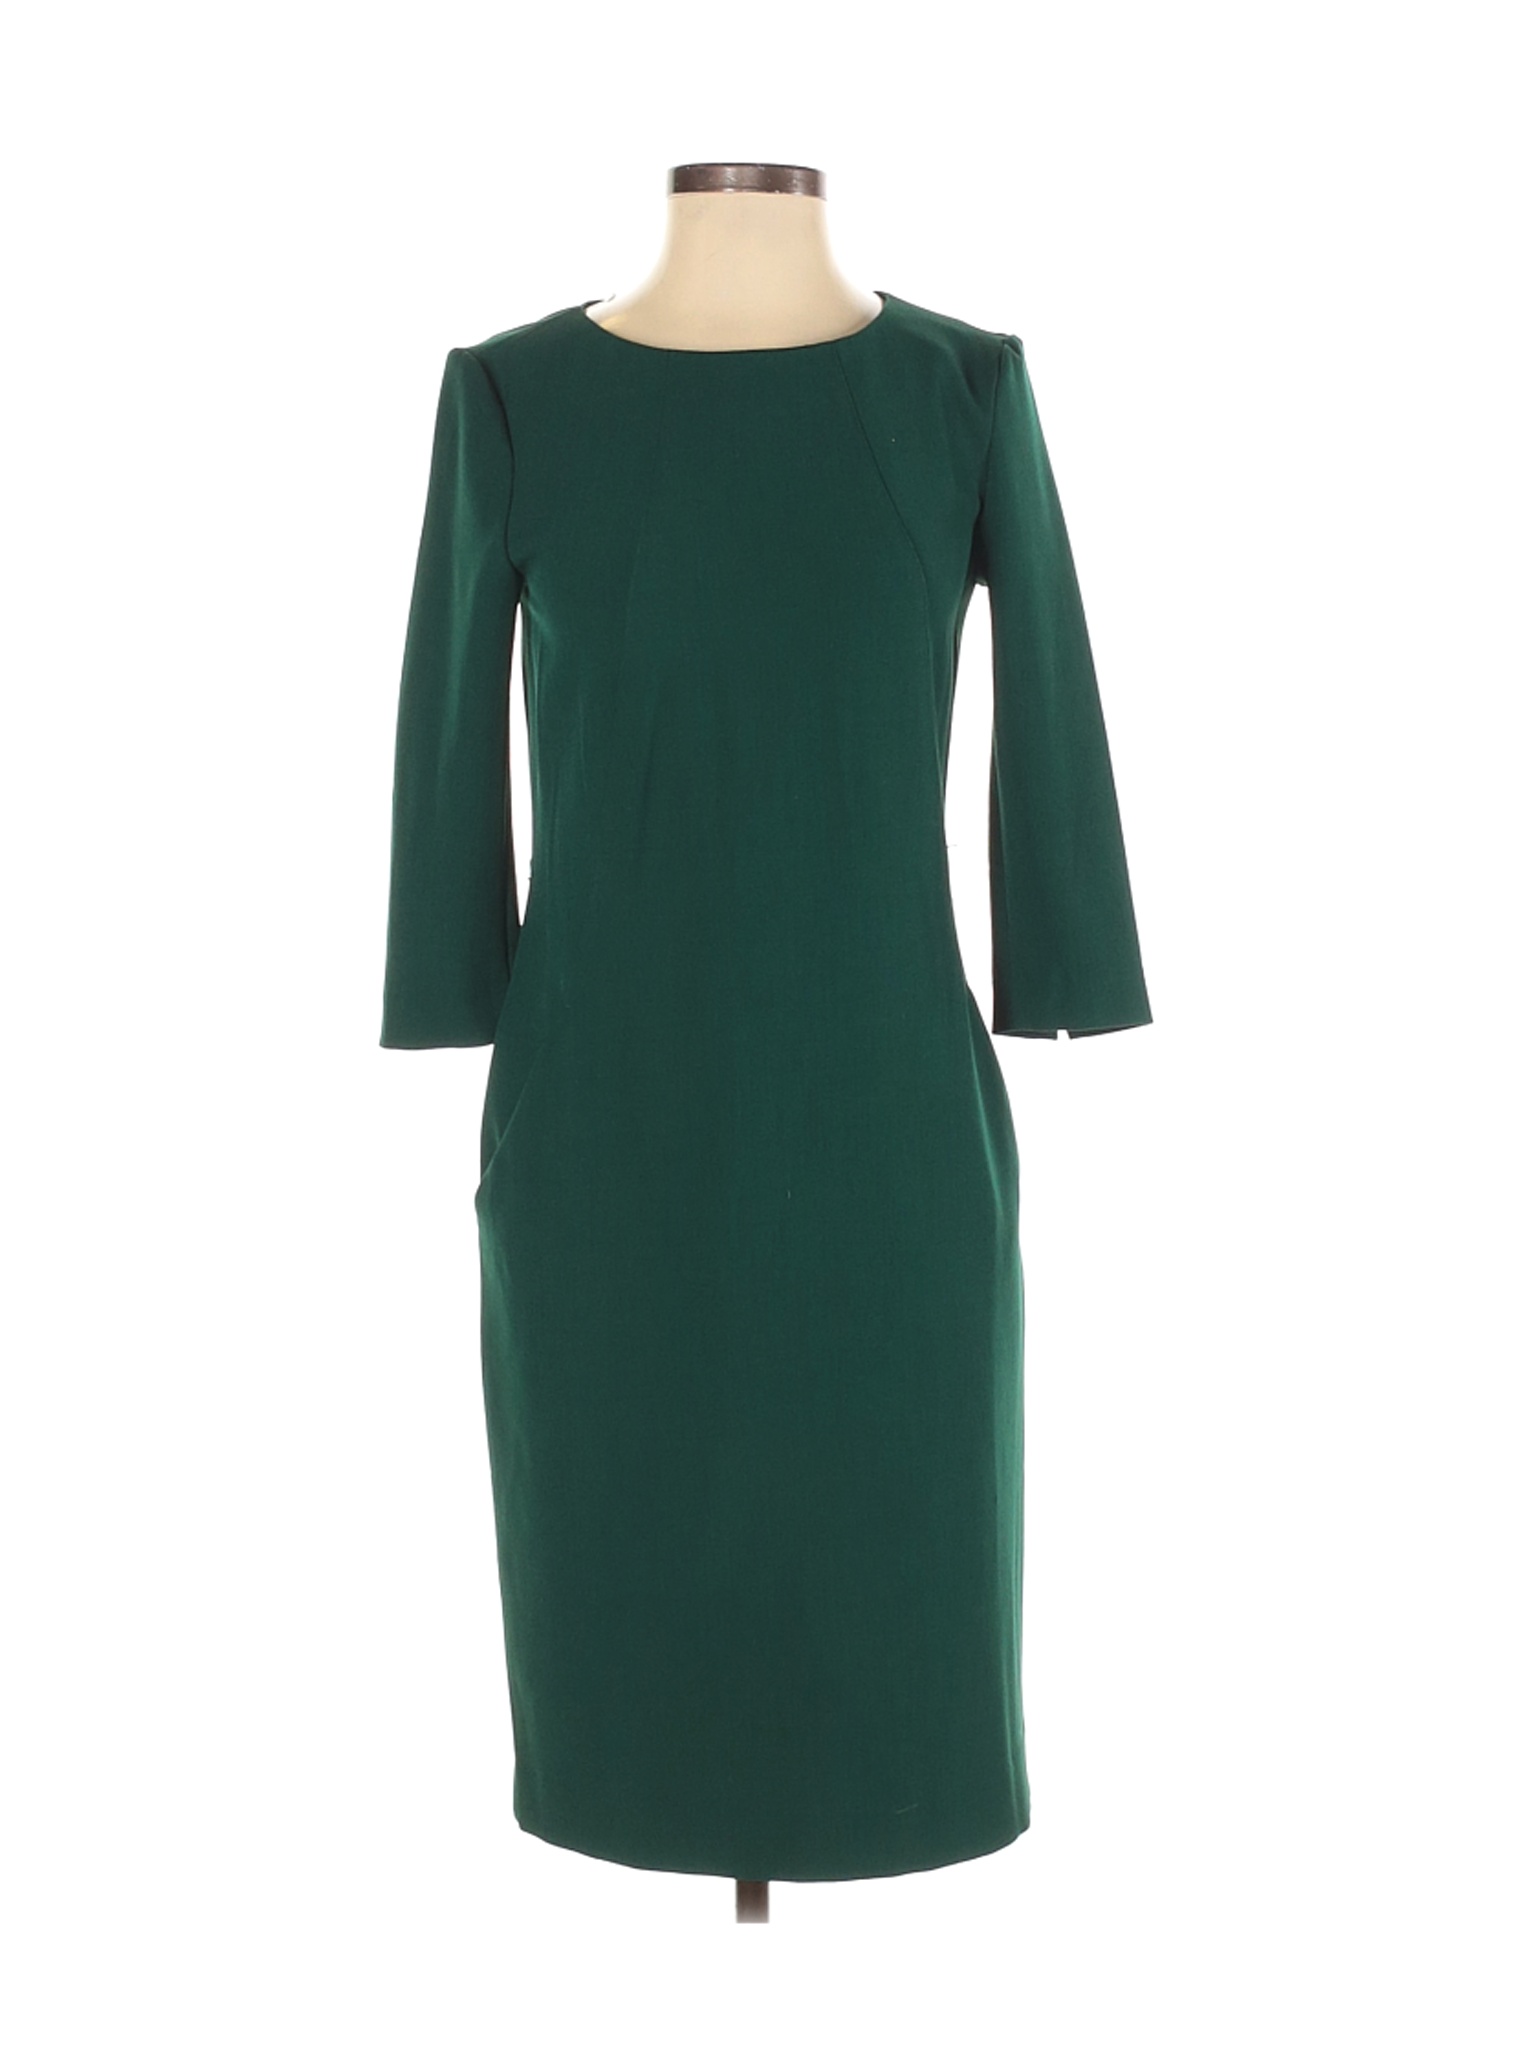 MM. LaFleur Women Green Casual Dress 2 | eBay